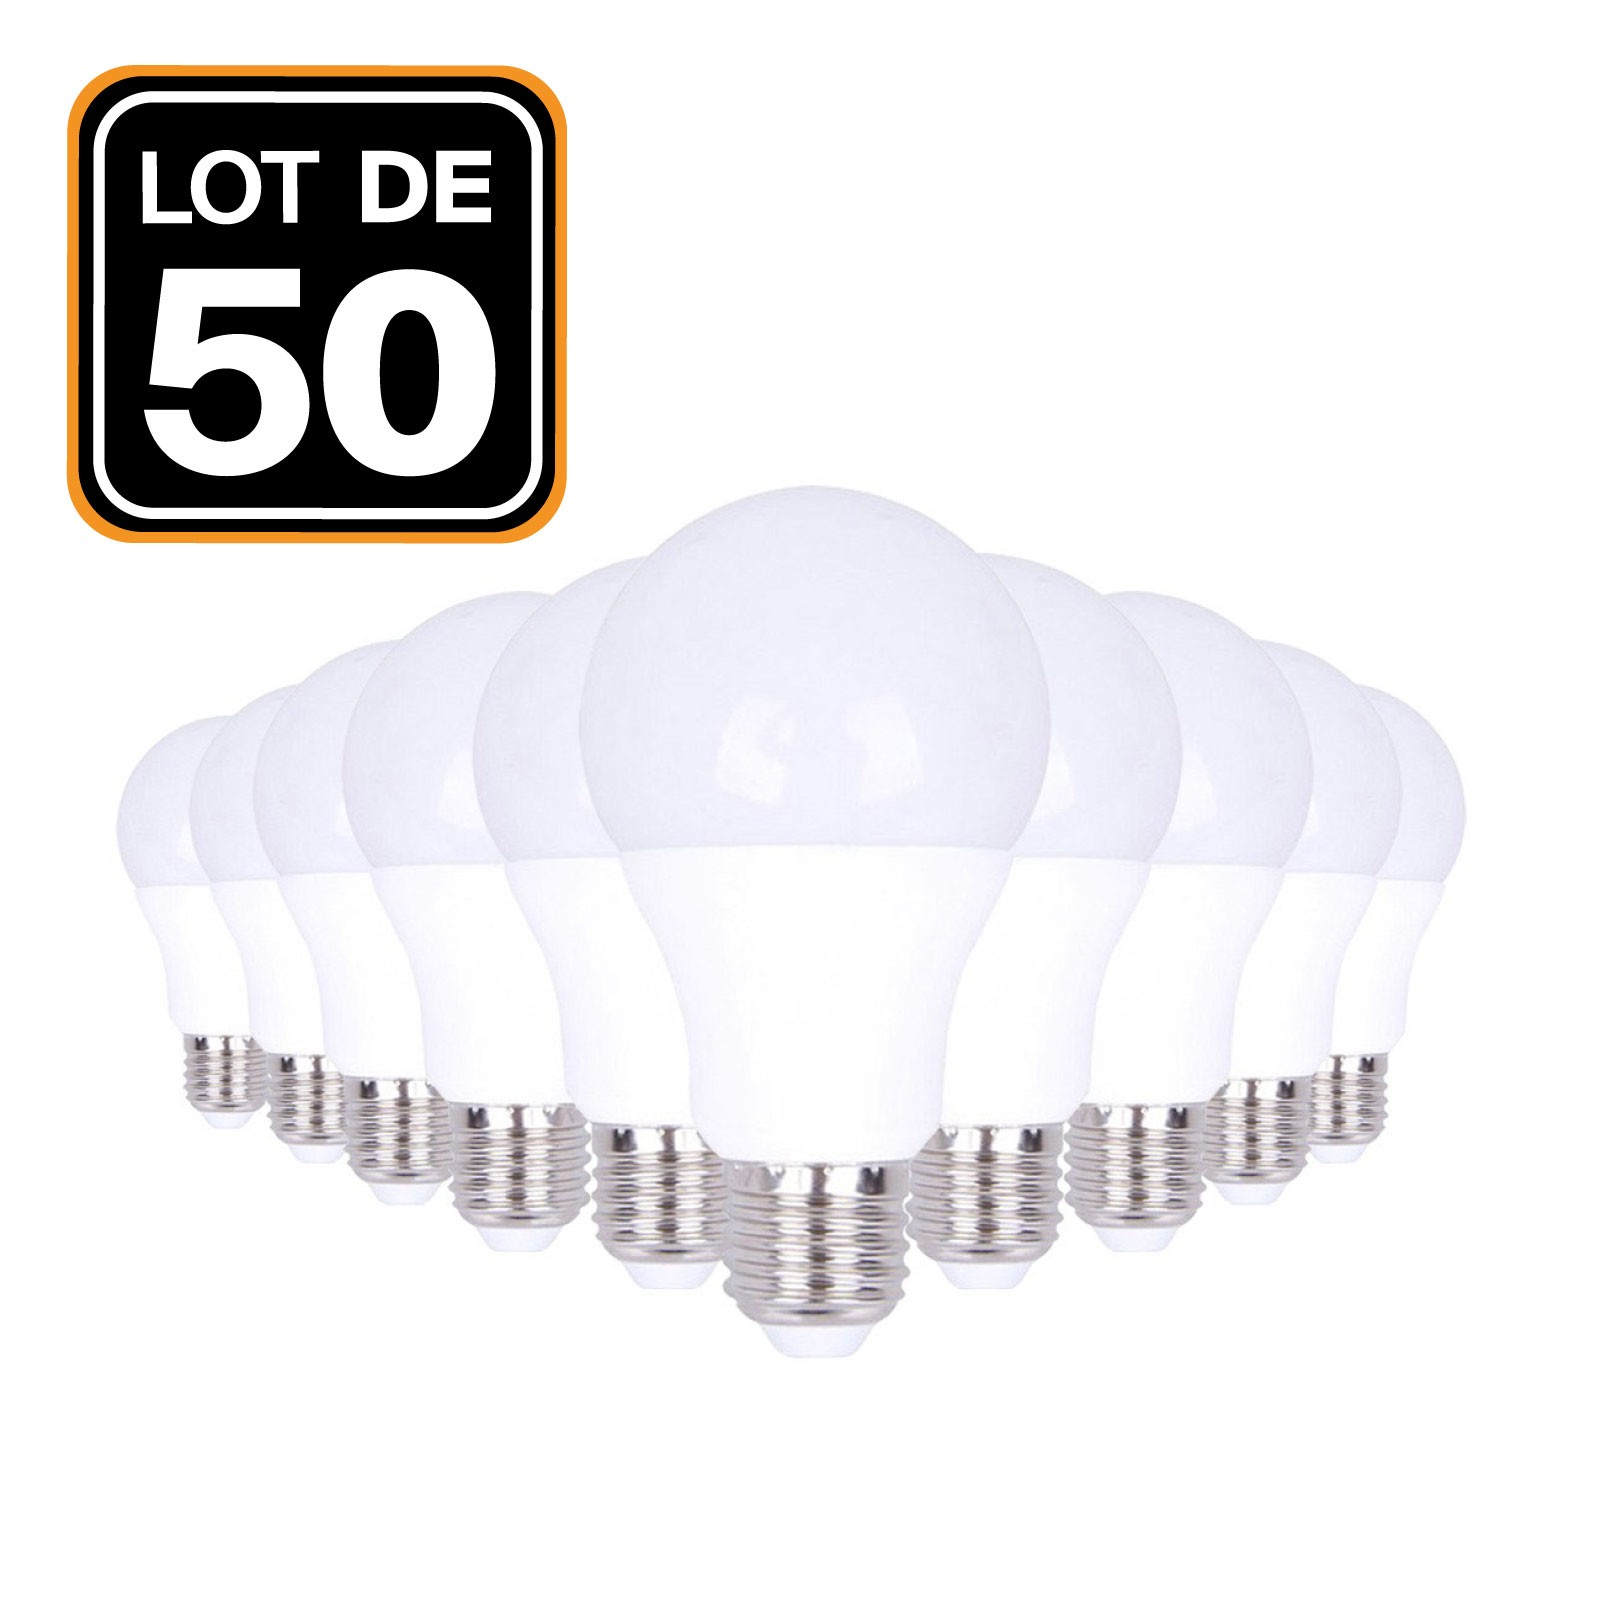 Lot 50 Ampoules LED E27 20W 2700K Blanc Chaud Haute Luminosité